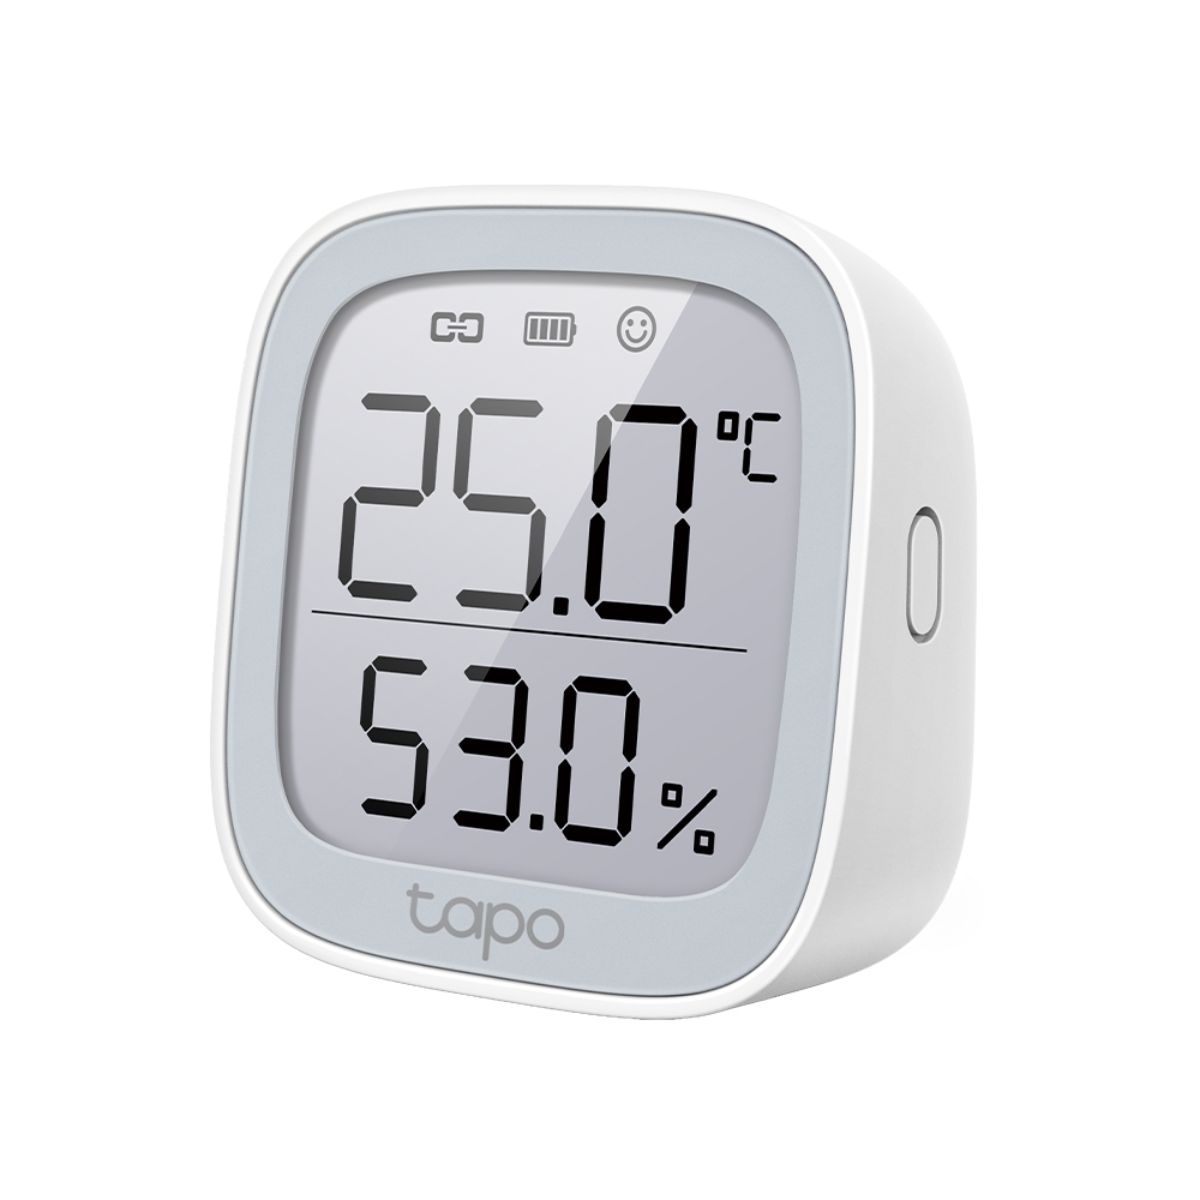 Thiết bị đo nhiệt độ TP-Link Tapo T315 hiển thị thông minh, giám sát thời gian thực, tiết kiệm năng lượng